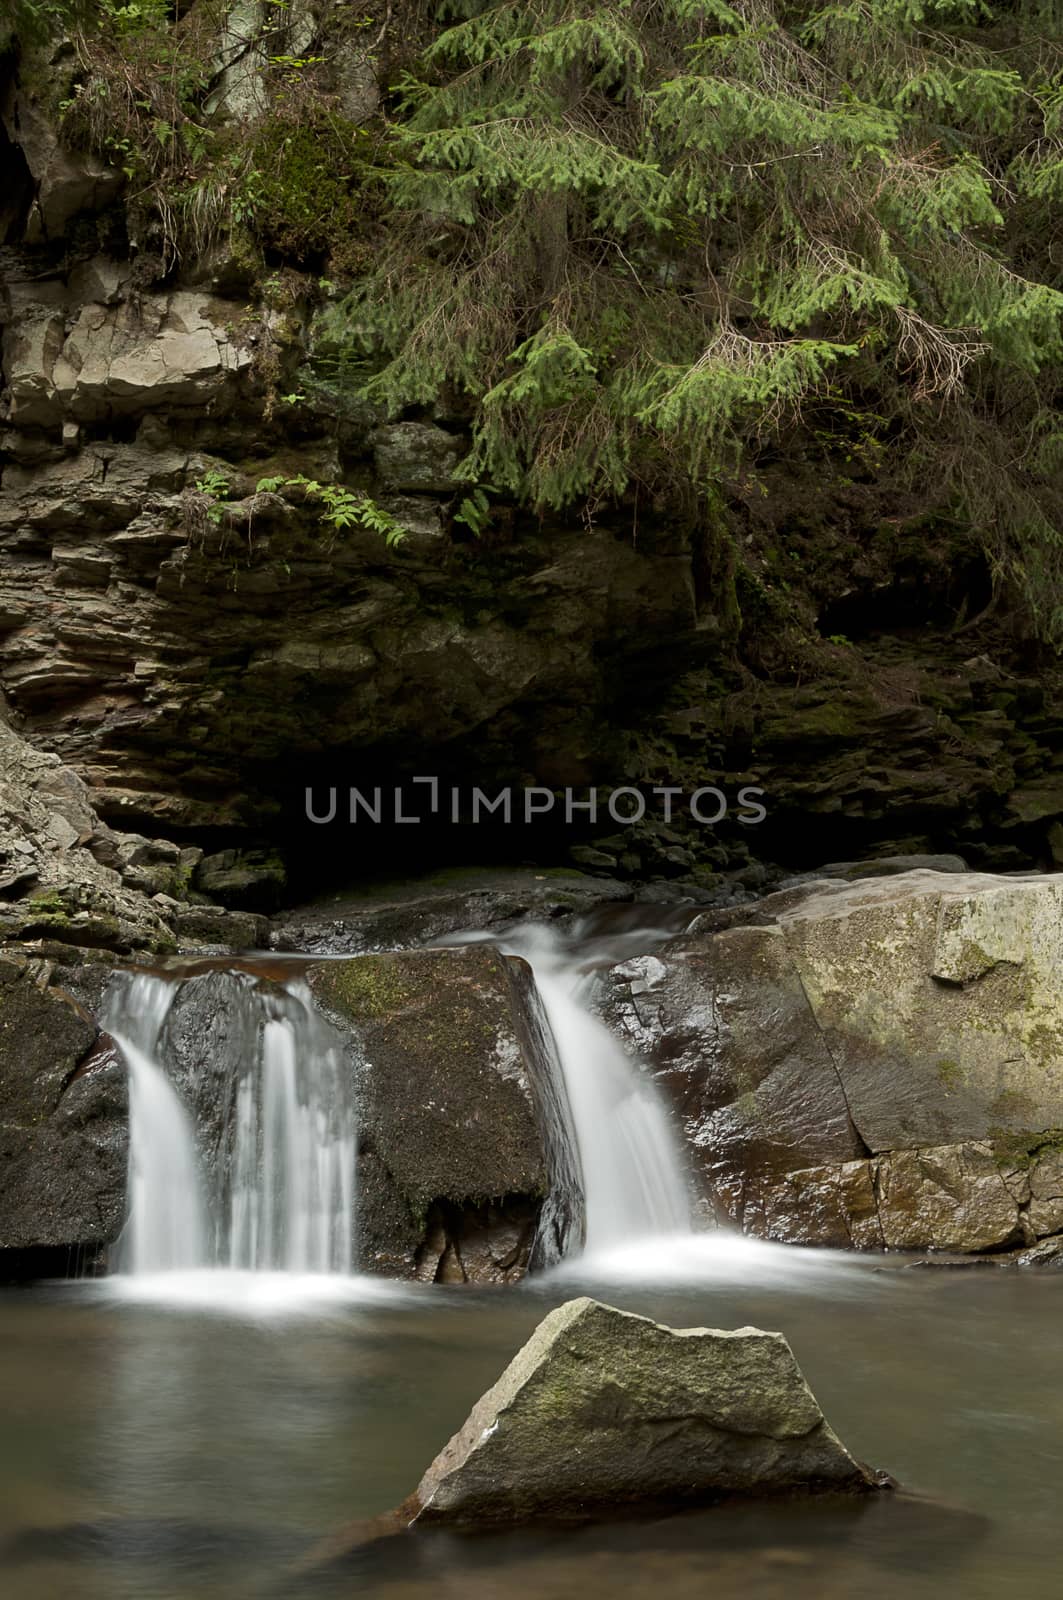 Small waterfall Divochi Sliozy in Yaremche, Ukraine by dred